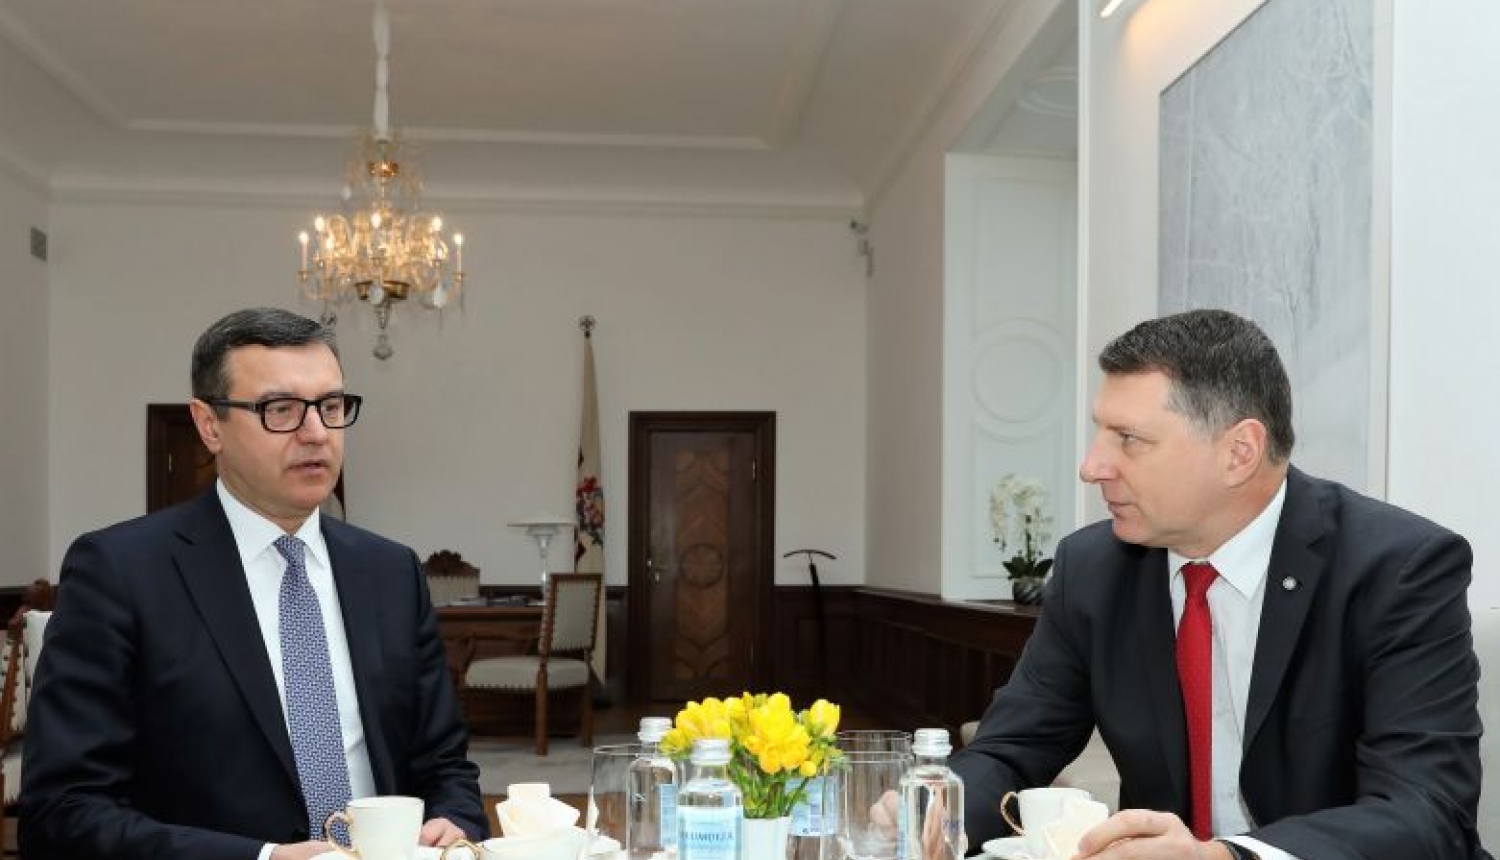 Valsts prezidents Raimonds Vējonis tiekas ar finanšu ministru Jāni Reiru